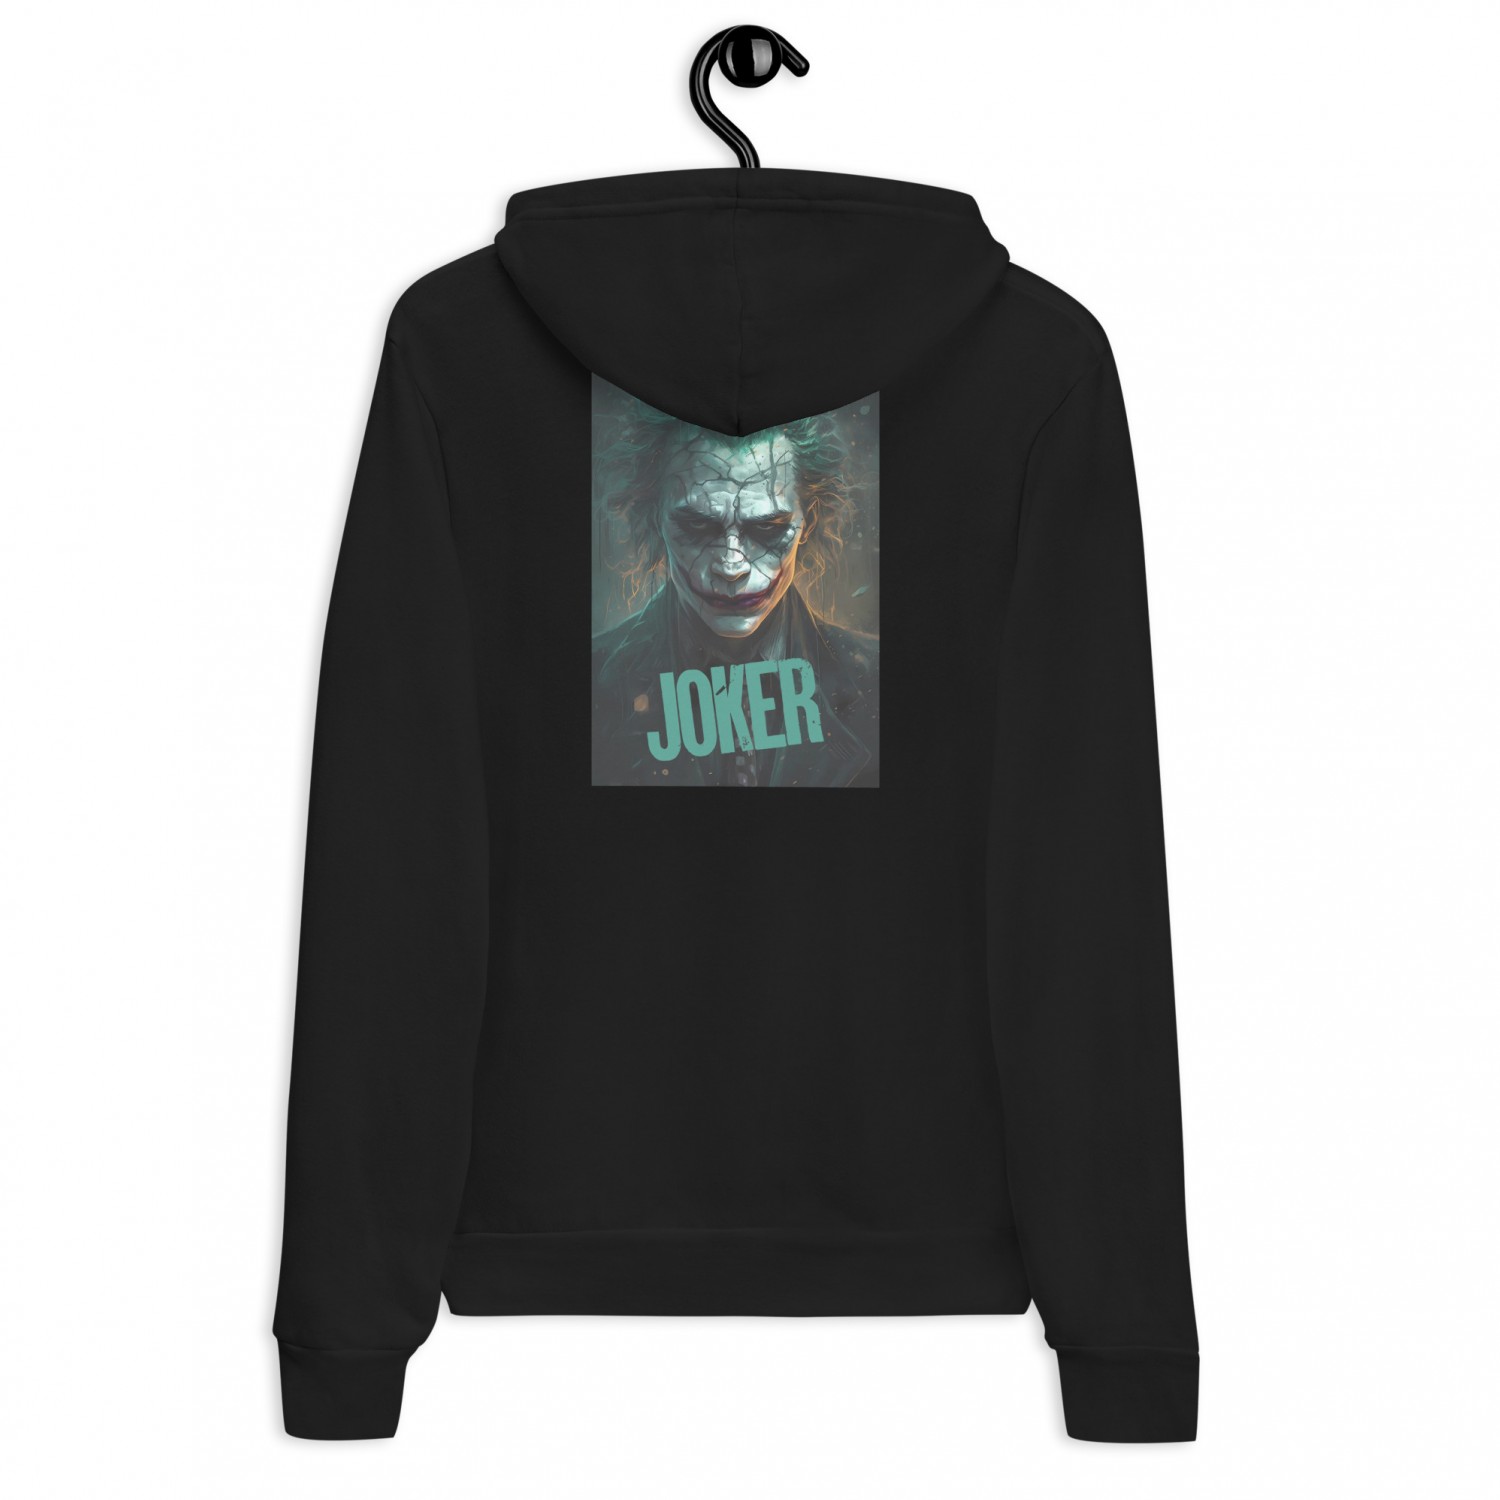 Kup ciepłą bluzę Joker